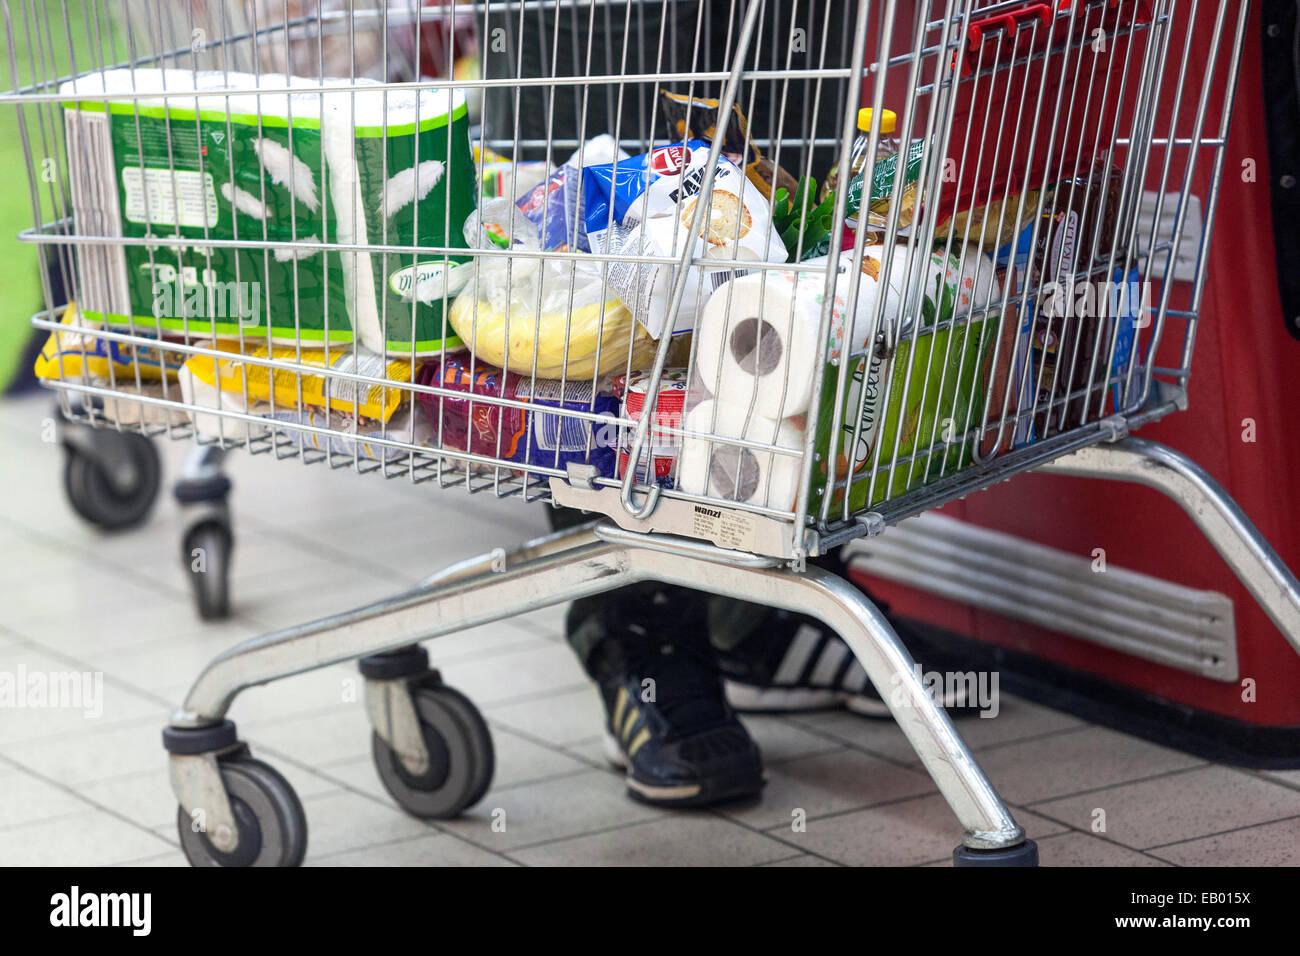 Carro supermercado, mercancías en carrito, Praga, República Checa Europa Foto de stock